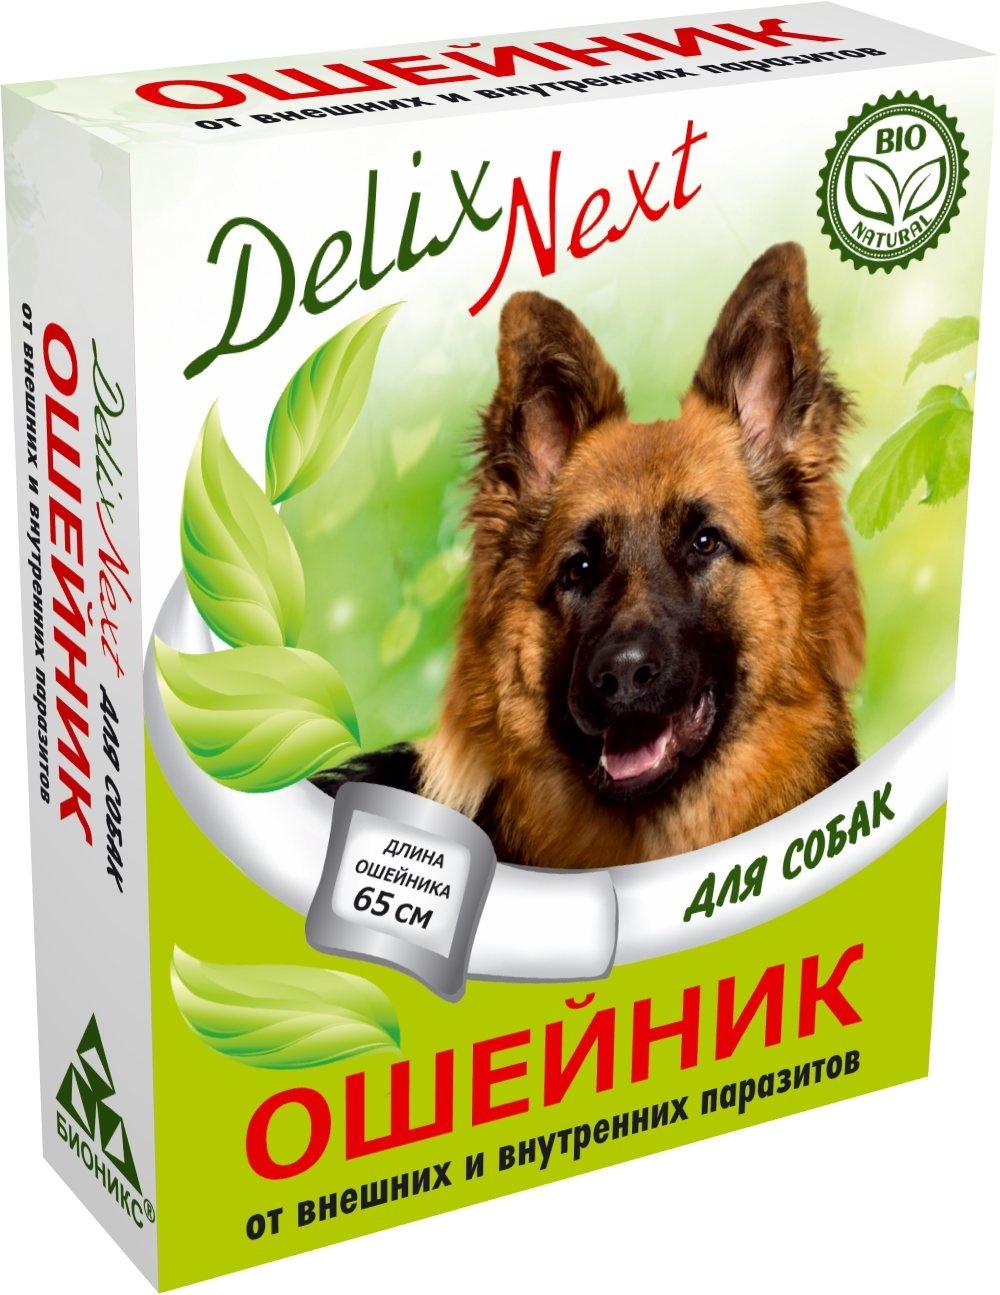 Бионикс ошейник антипаразитарный Delix Next с диметиконом, для собак (16 г)